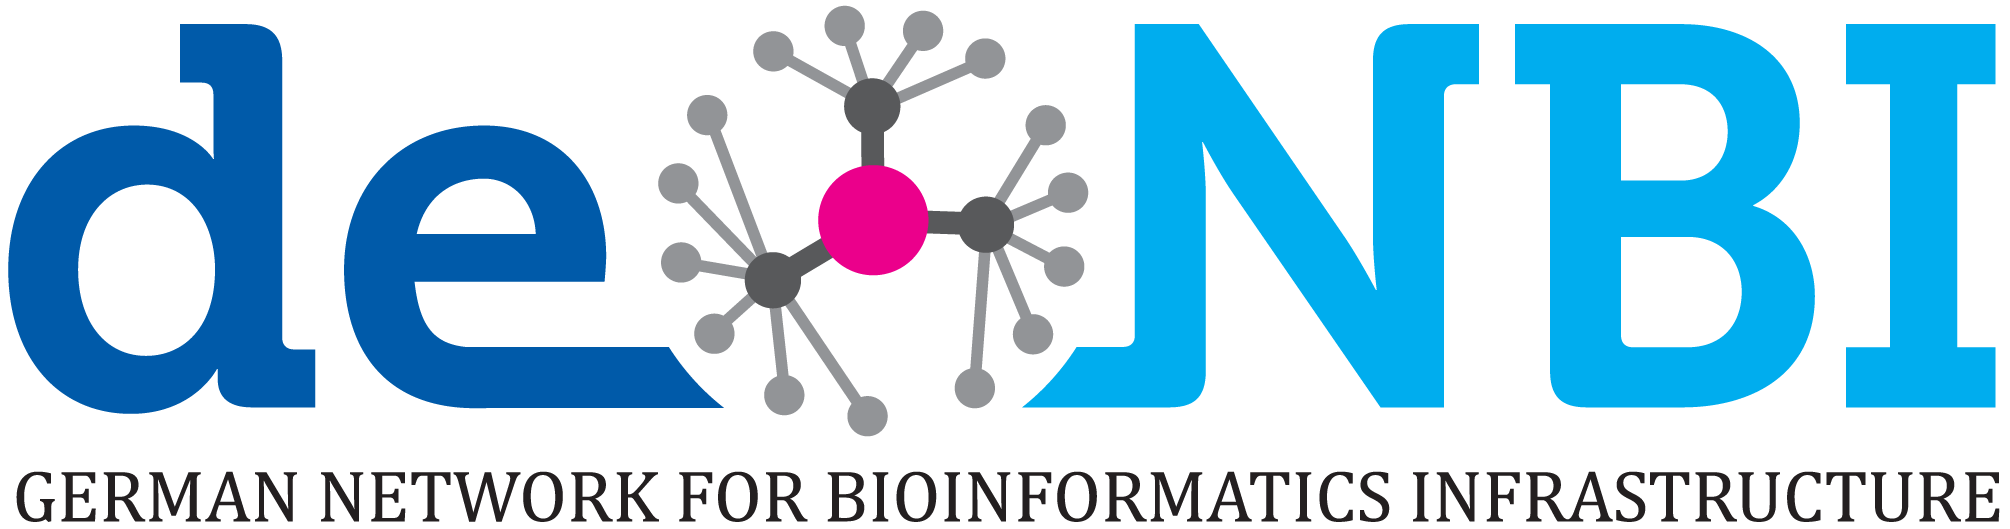 de.NBI logo